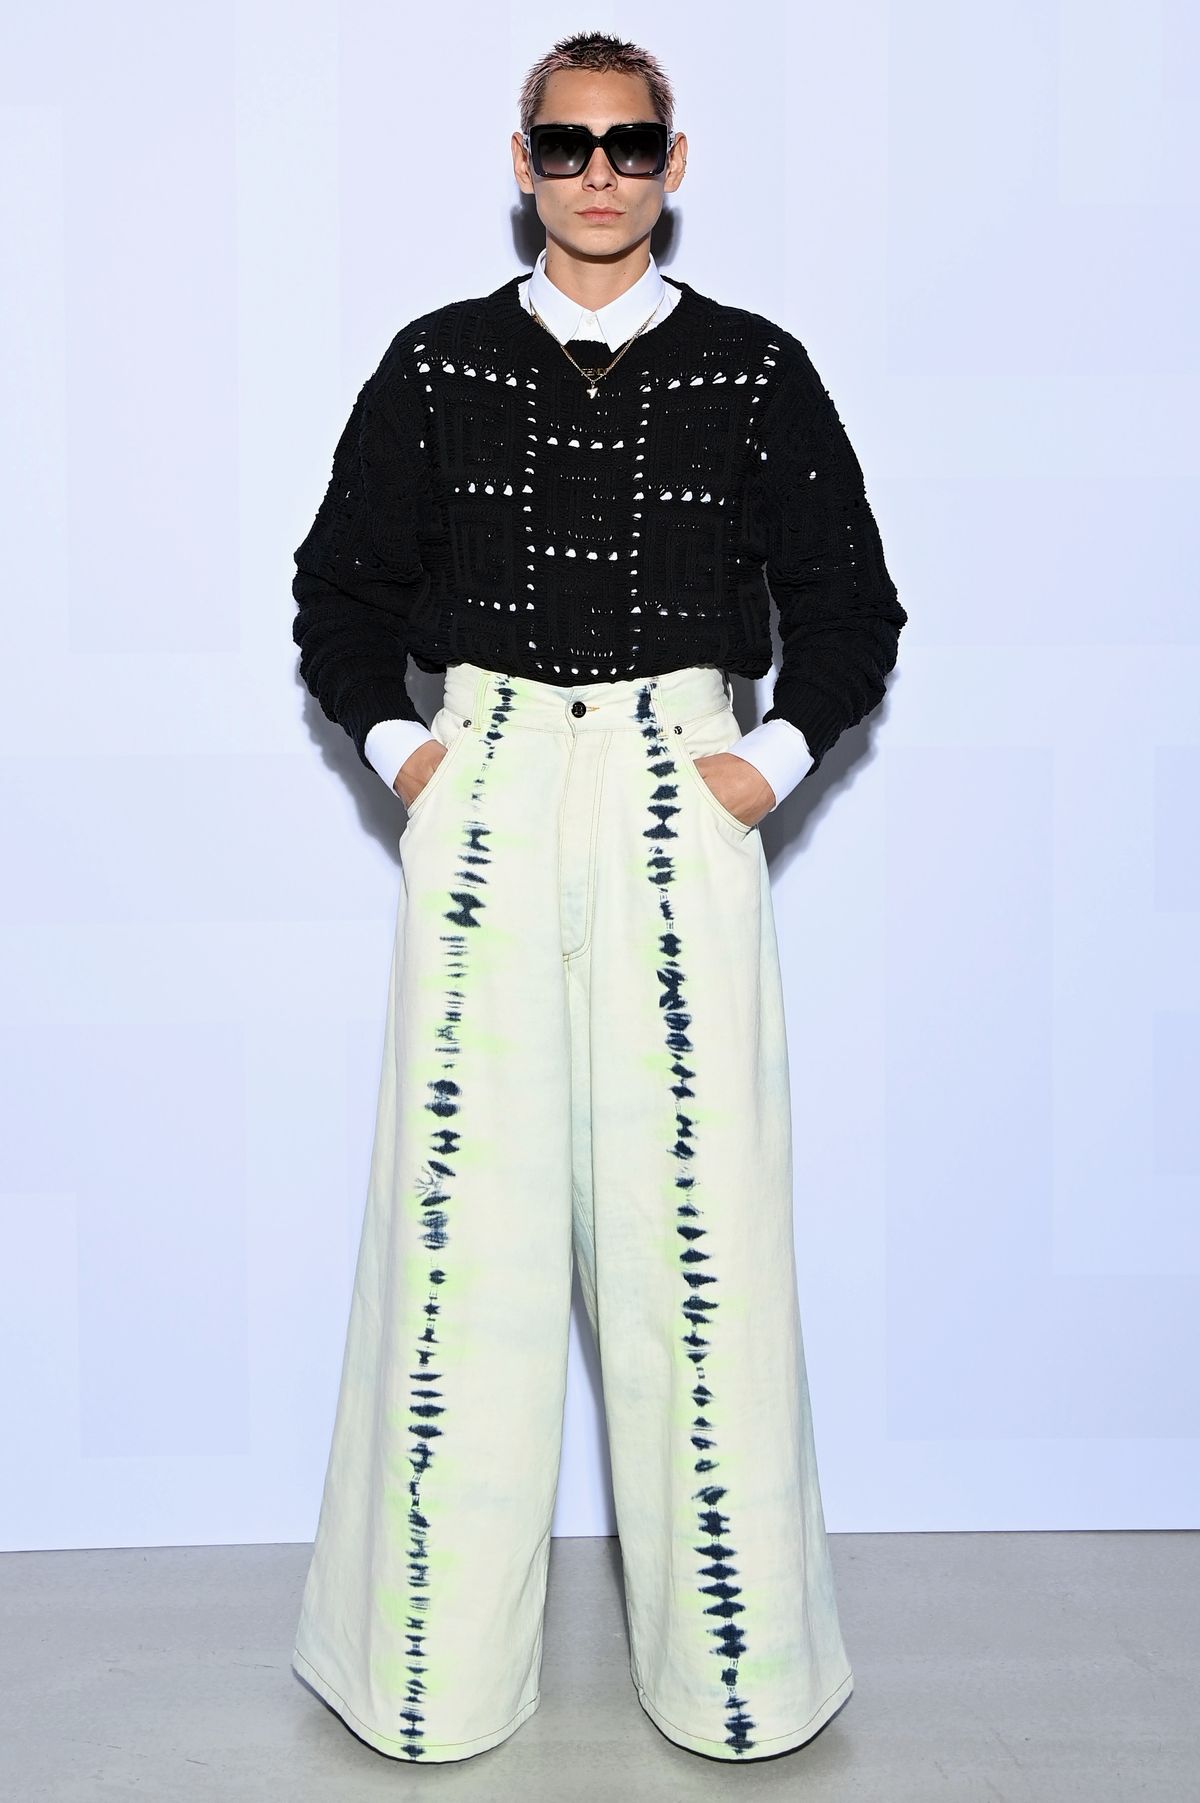 Эван Мок на шоу Balmain Womenswear Весна/лето 2022 в рамках Недели моды в Париже, фото 1